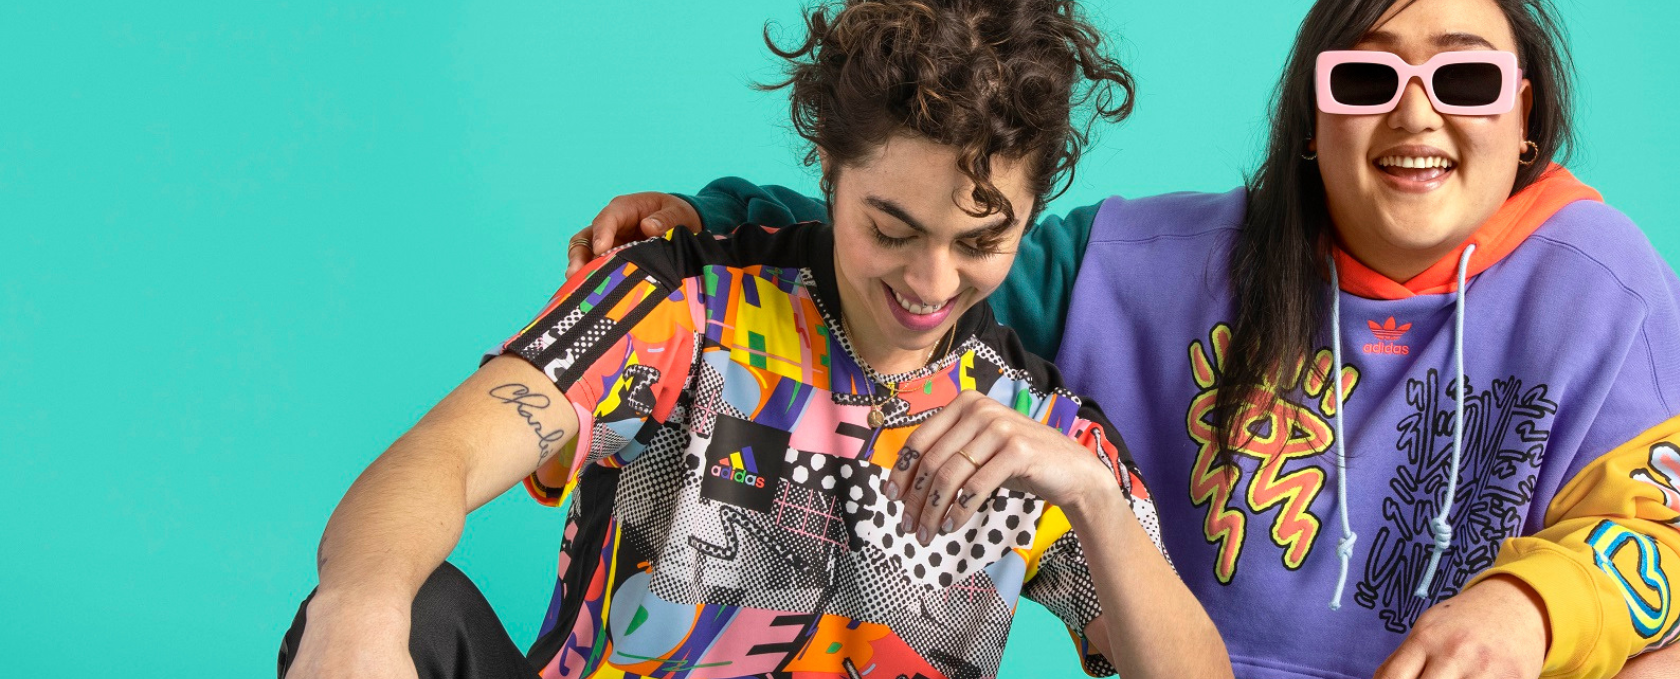 Miłość jednoczy! Wyjątkowa kolekcja Adidas w hołdzie społeczności LGBTQIA+